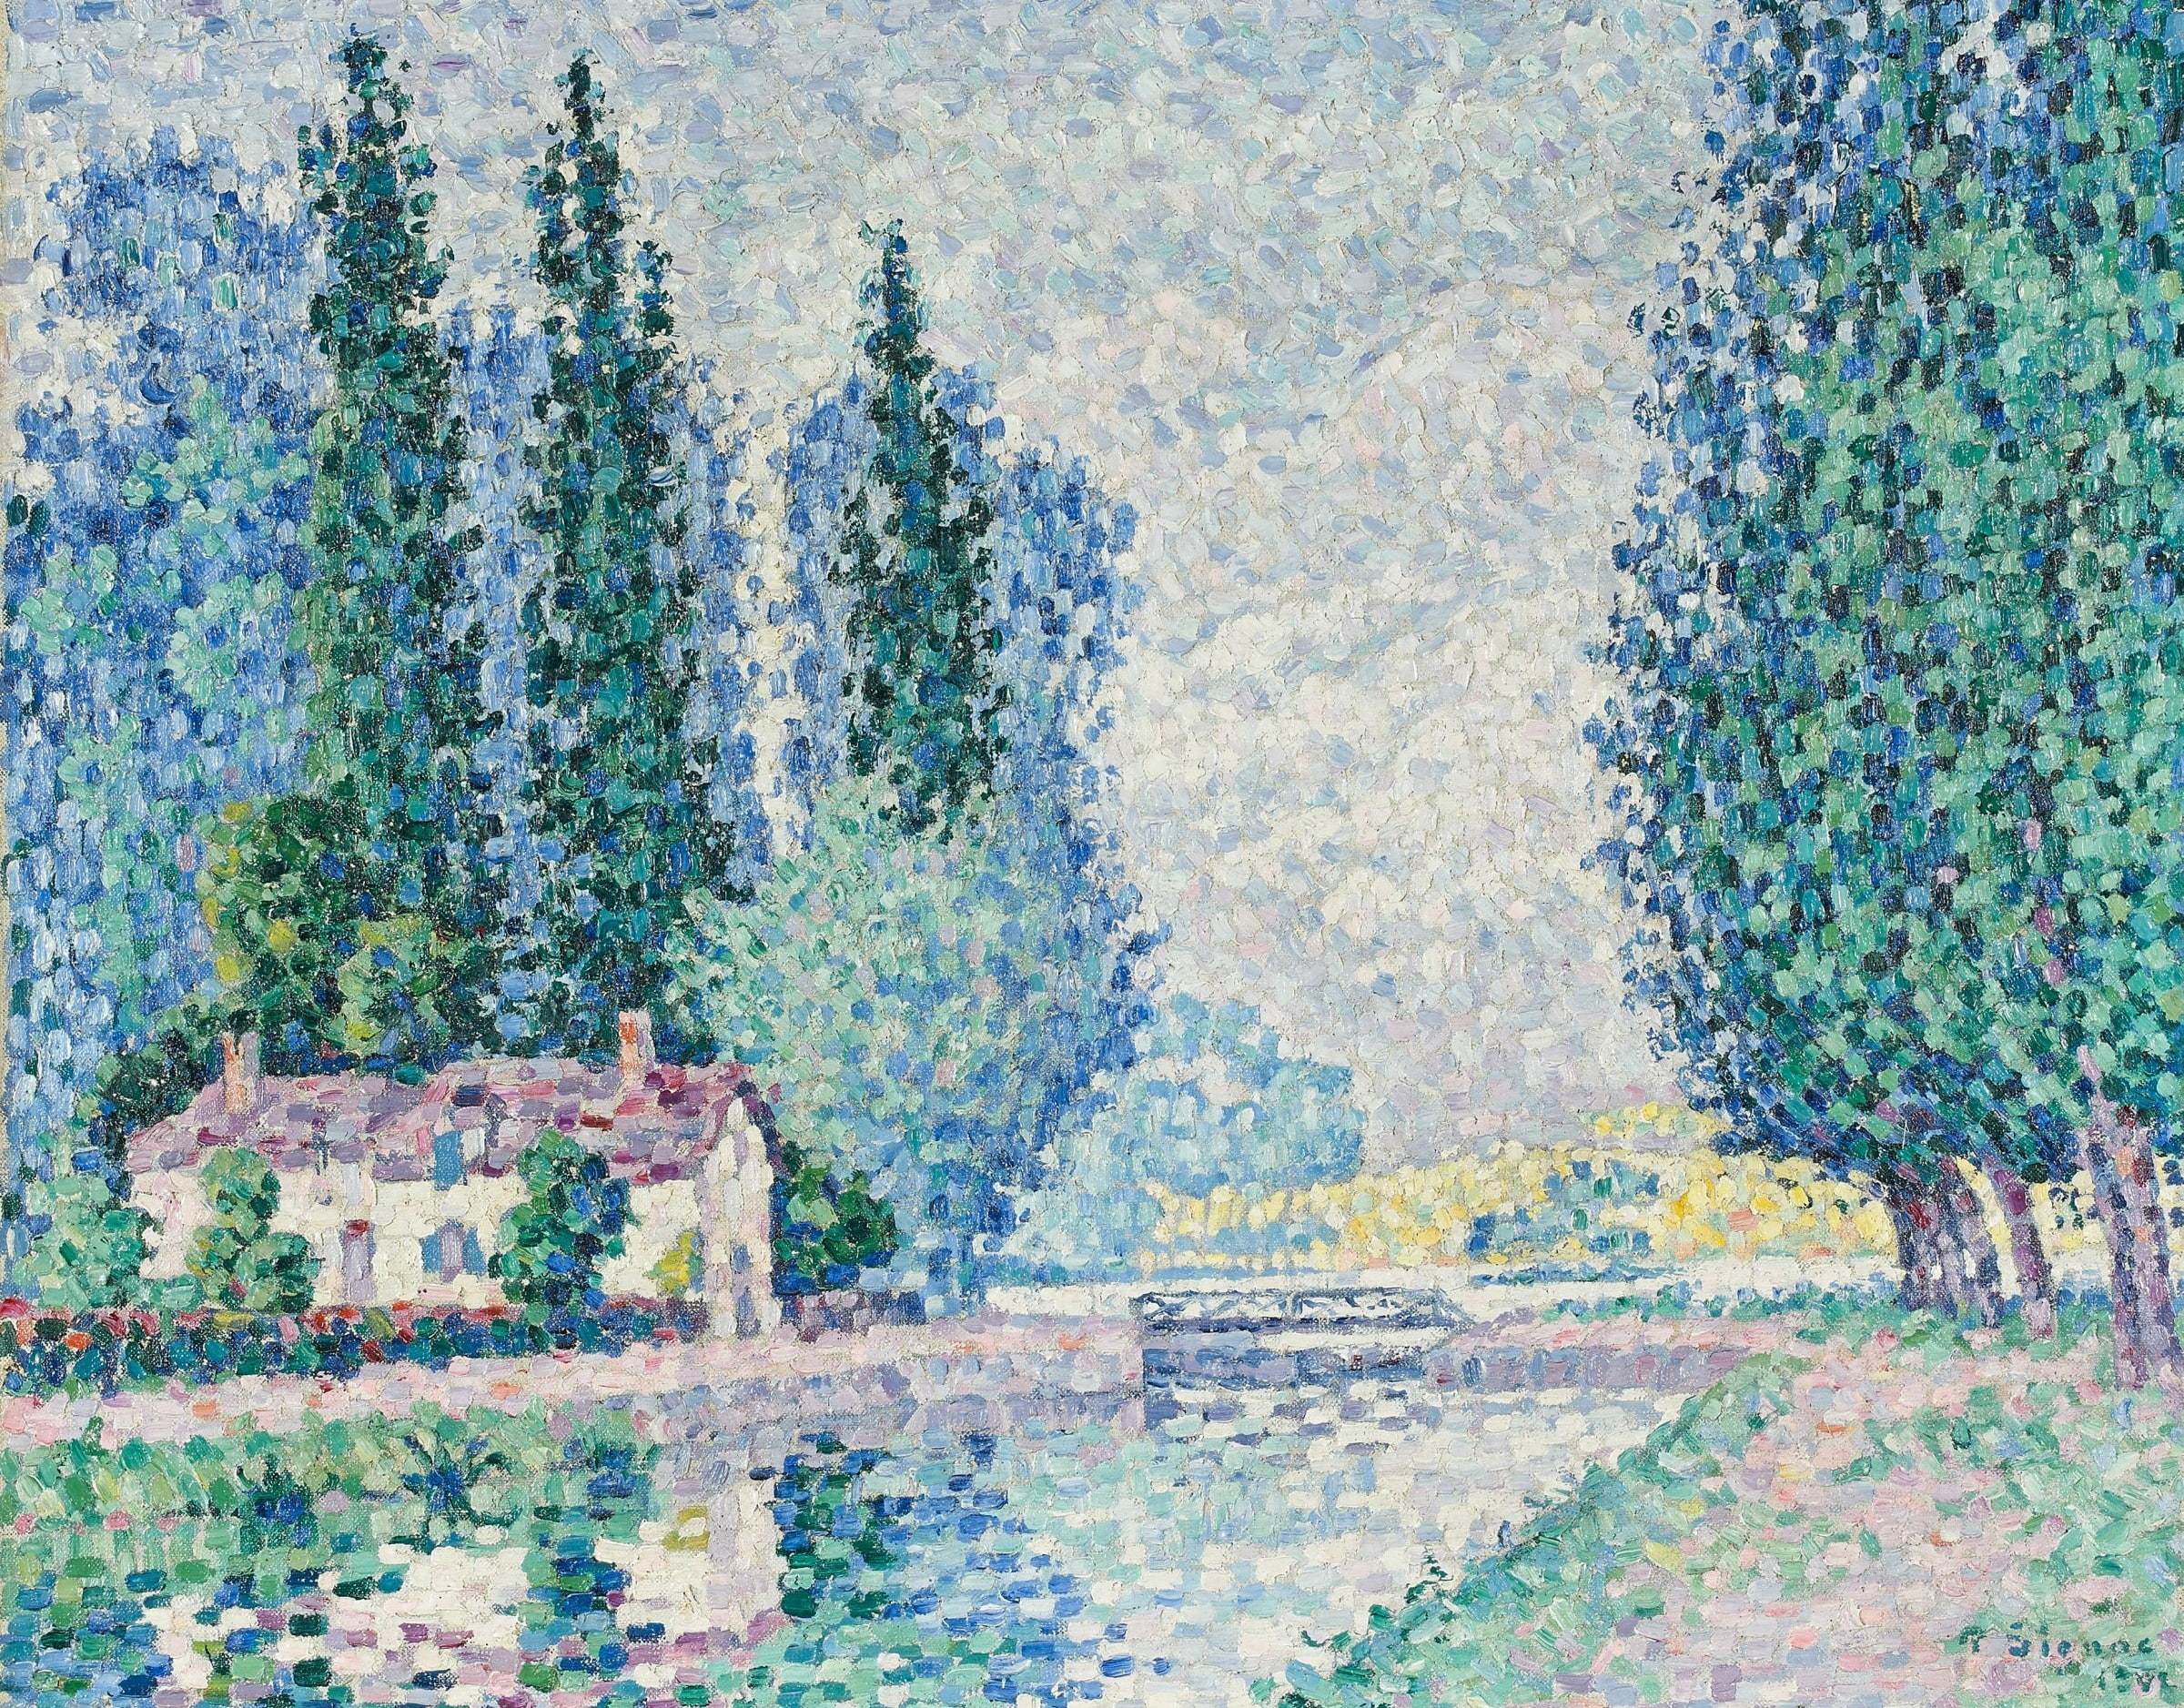 trees, landscape, bridge, house, picture, Paul Signac, pointillism